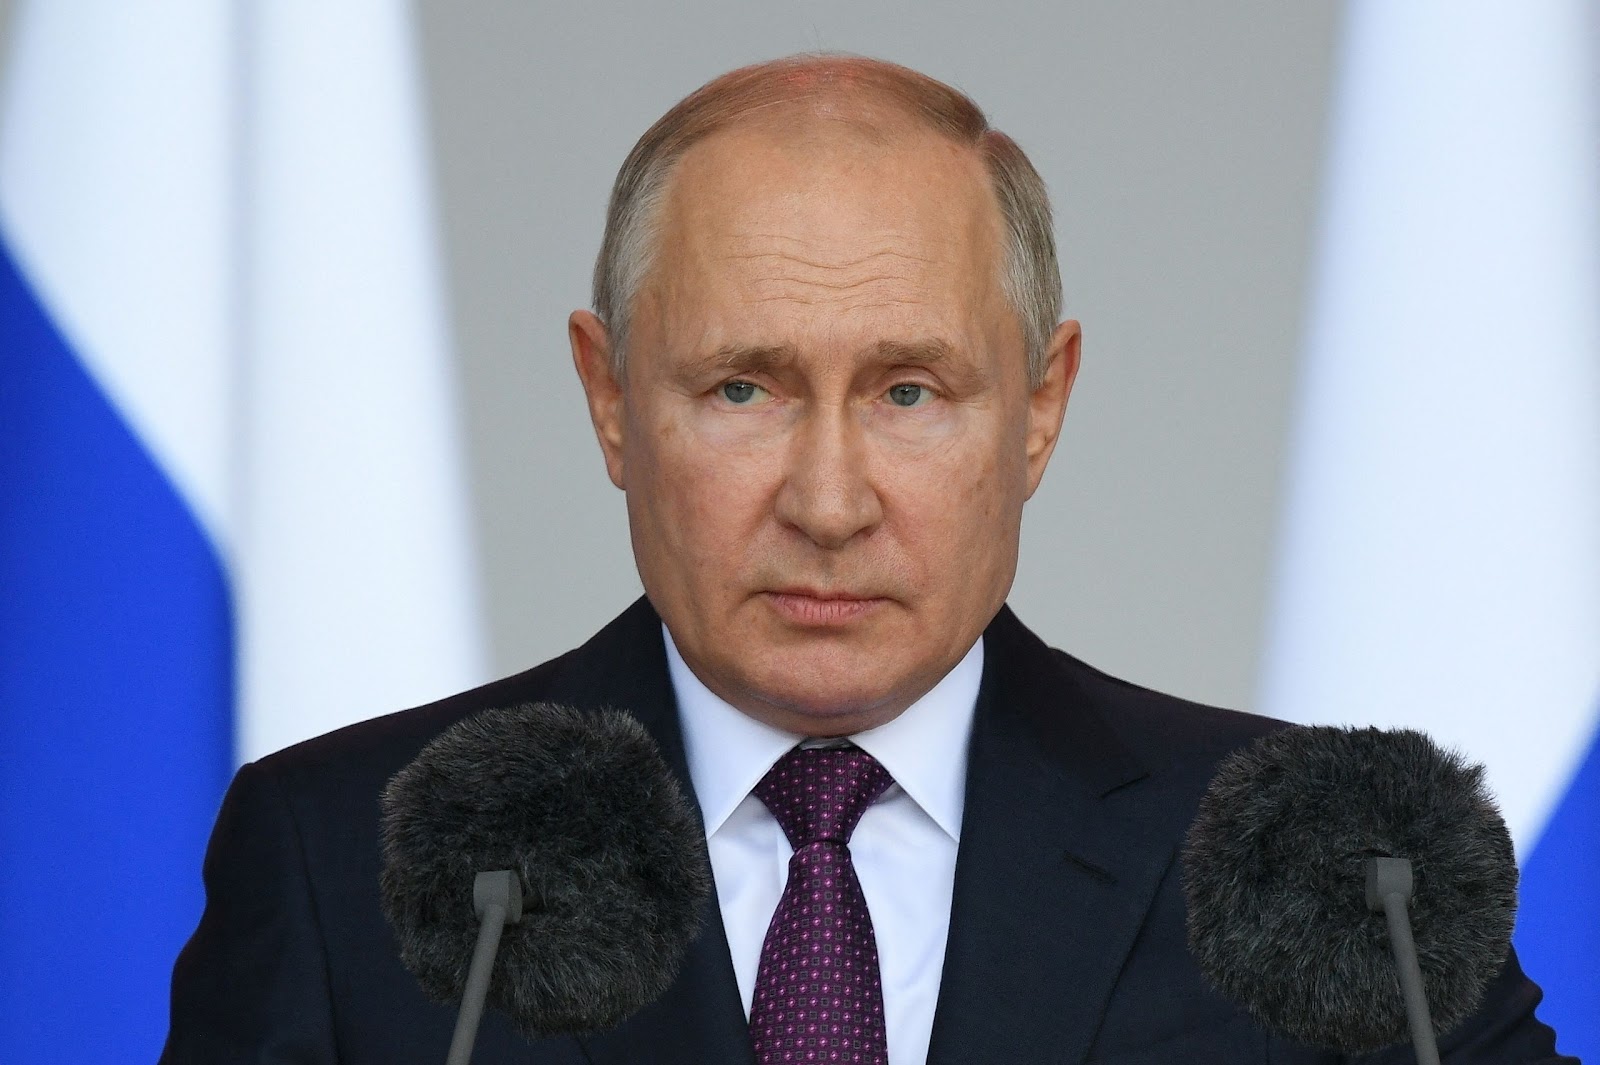 Esplosione al centro di Mosca: droni colpiscono grattacielo, Putin si esprime su G20 e aiuti al grano africano